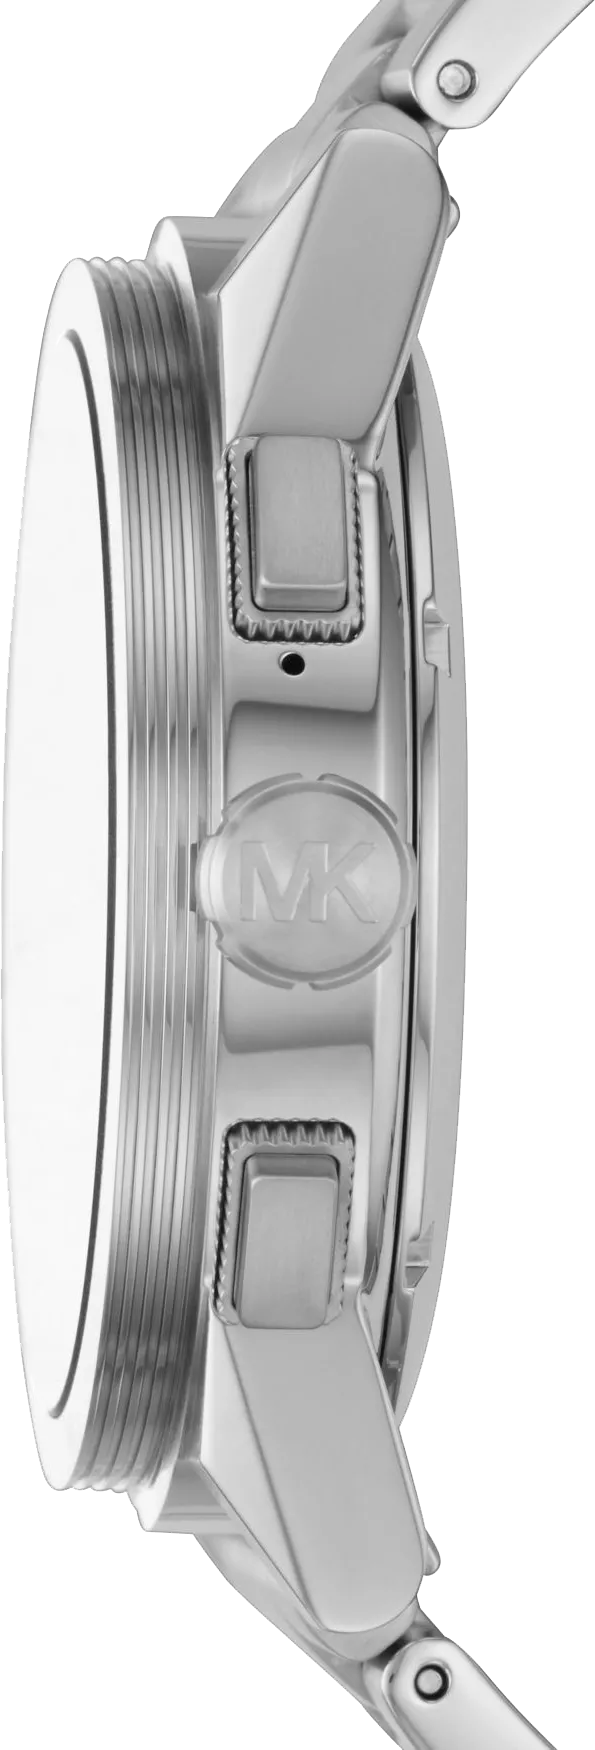 Michael Kors Access Grayson Smartwatch 47mm